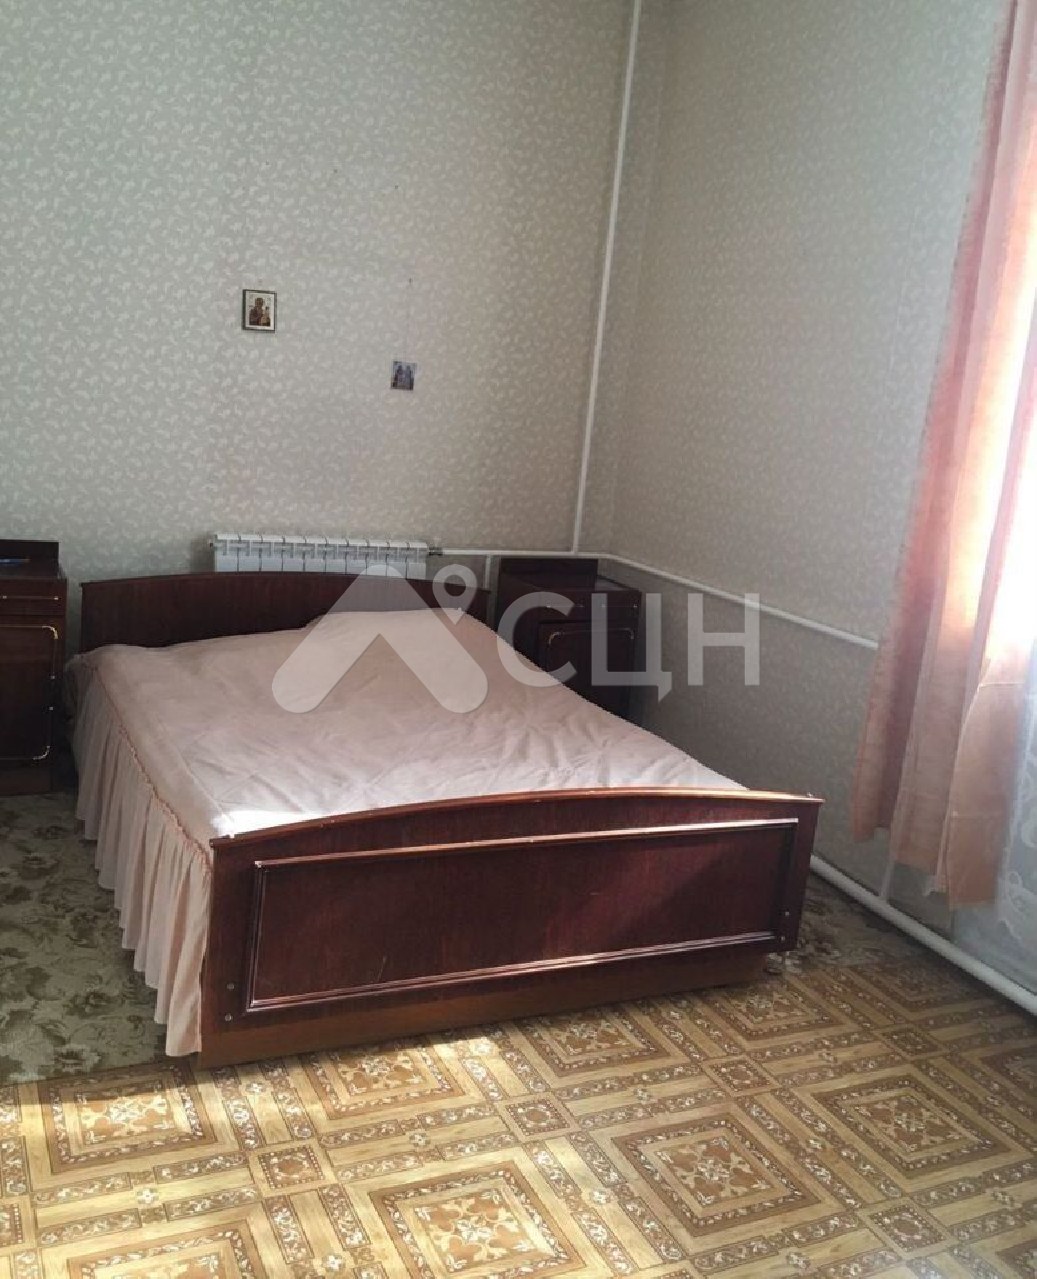 квартиры в сарове
: Г. Саров, проспект Ленина, 8, 3-комн квартира, этаж 1 из 4, продажа.